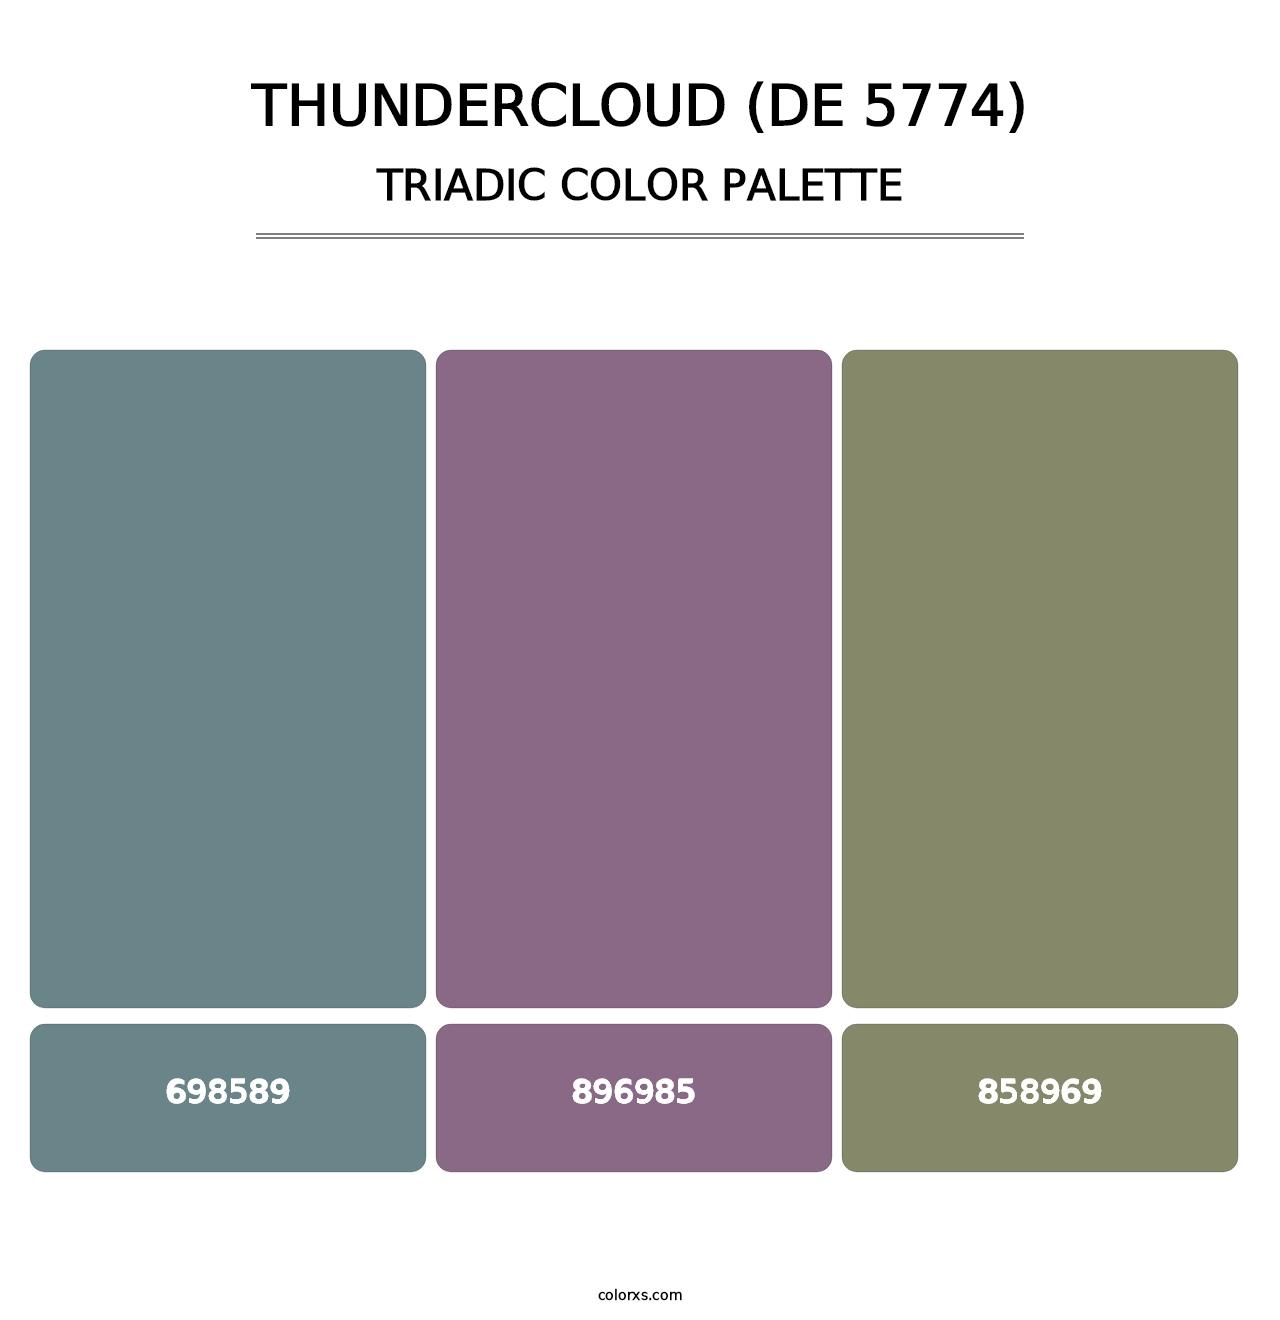 Thundercloud (DE 5774) - Triadic Color Palette